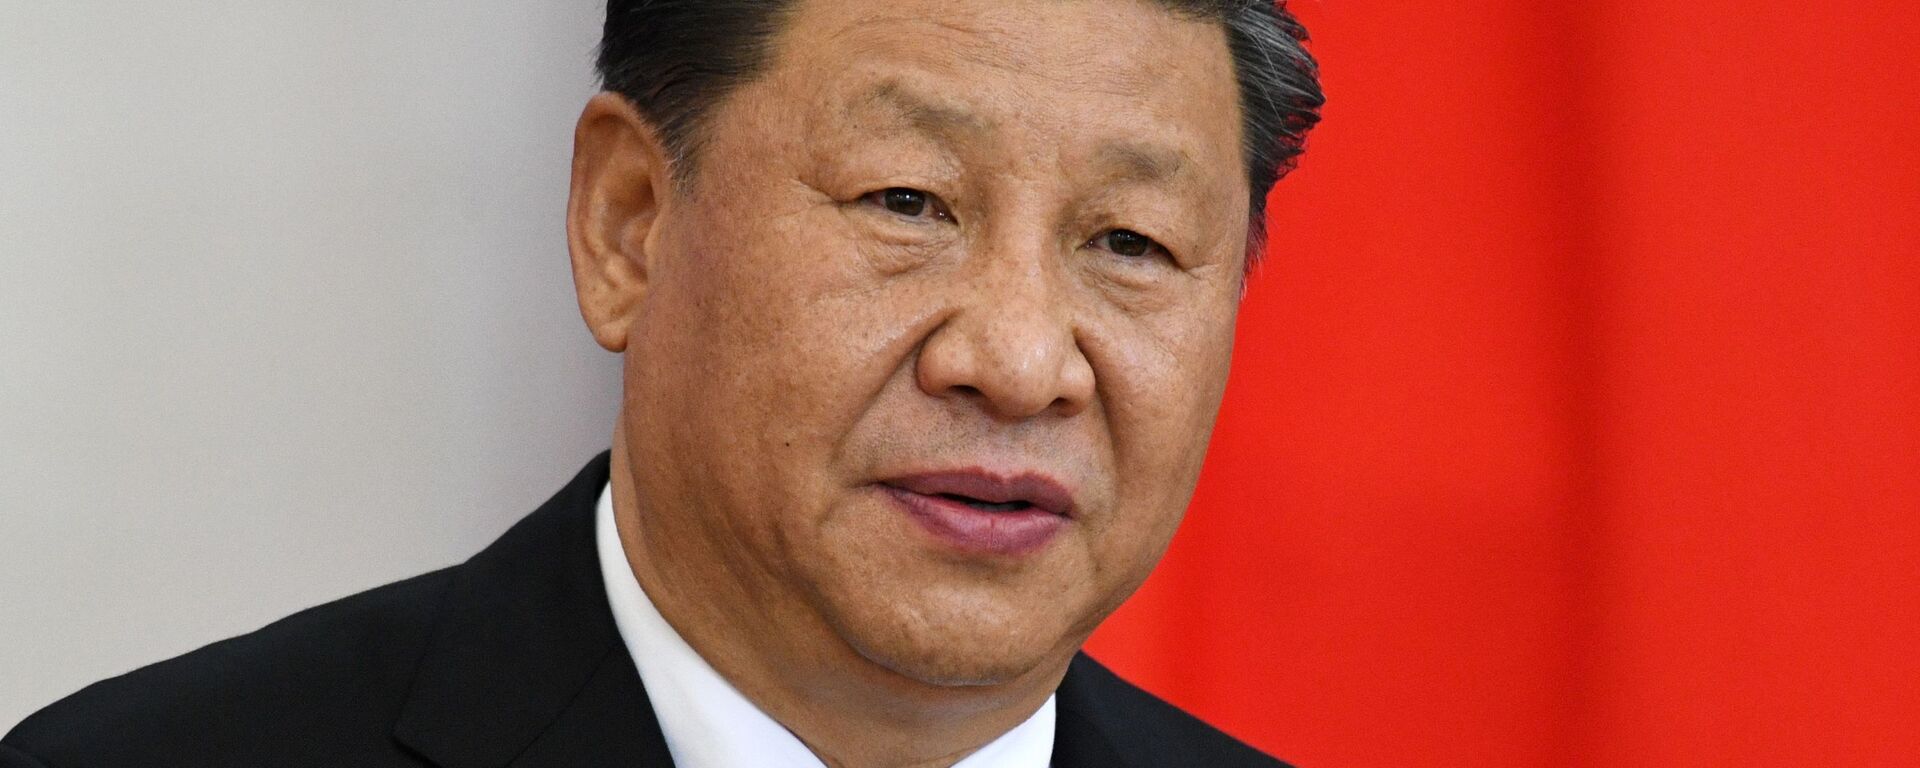 Xi Jinping, presidente de China - Sputnik Mundo, 1920, 03.09.2021